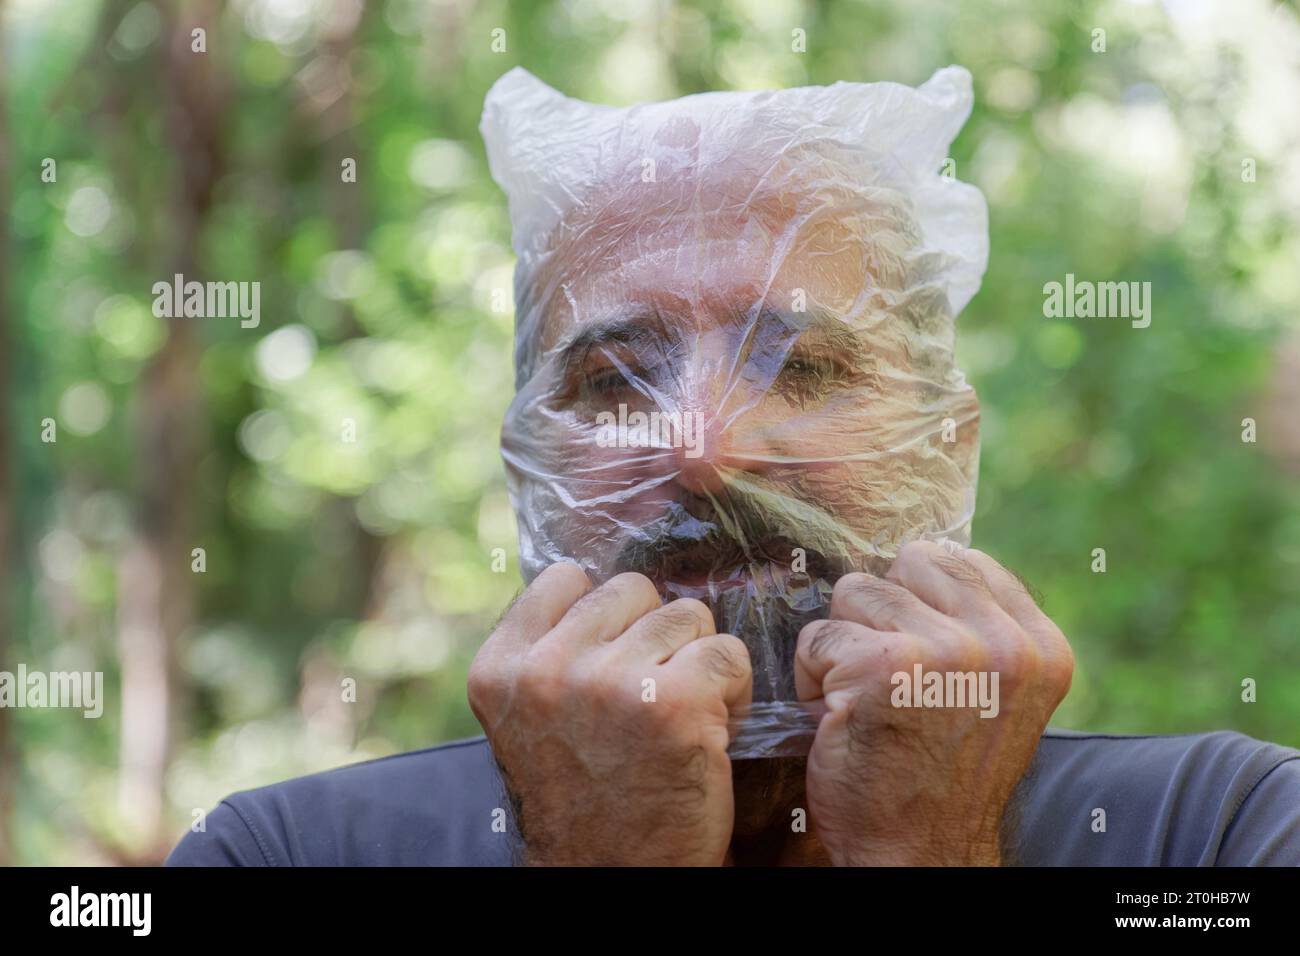 Uomo con un sacchetto di plastica sulla testa che annegava in campagna, riciclando il concetto di ecologia Foto Stock